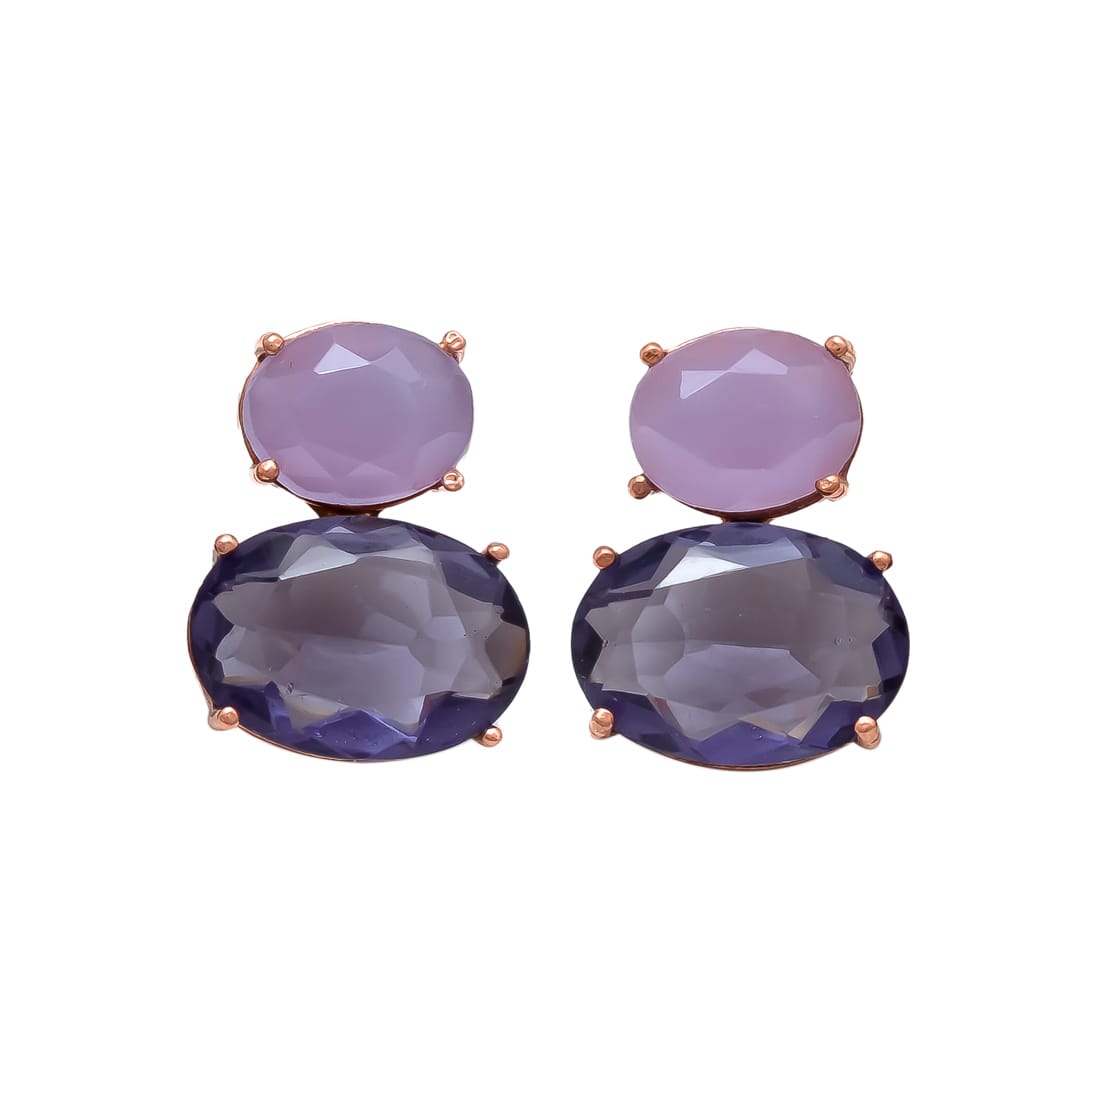 Melange Mia Sterling Silver Bubble Earrings - Lolite Hydro & Lavender Chalcedony Hydro